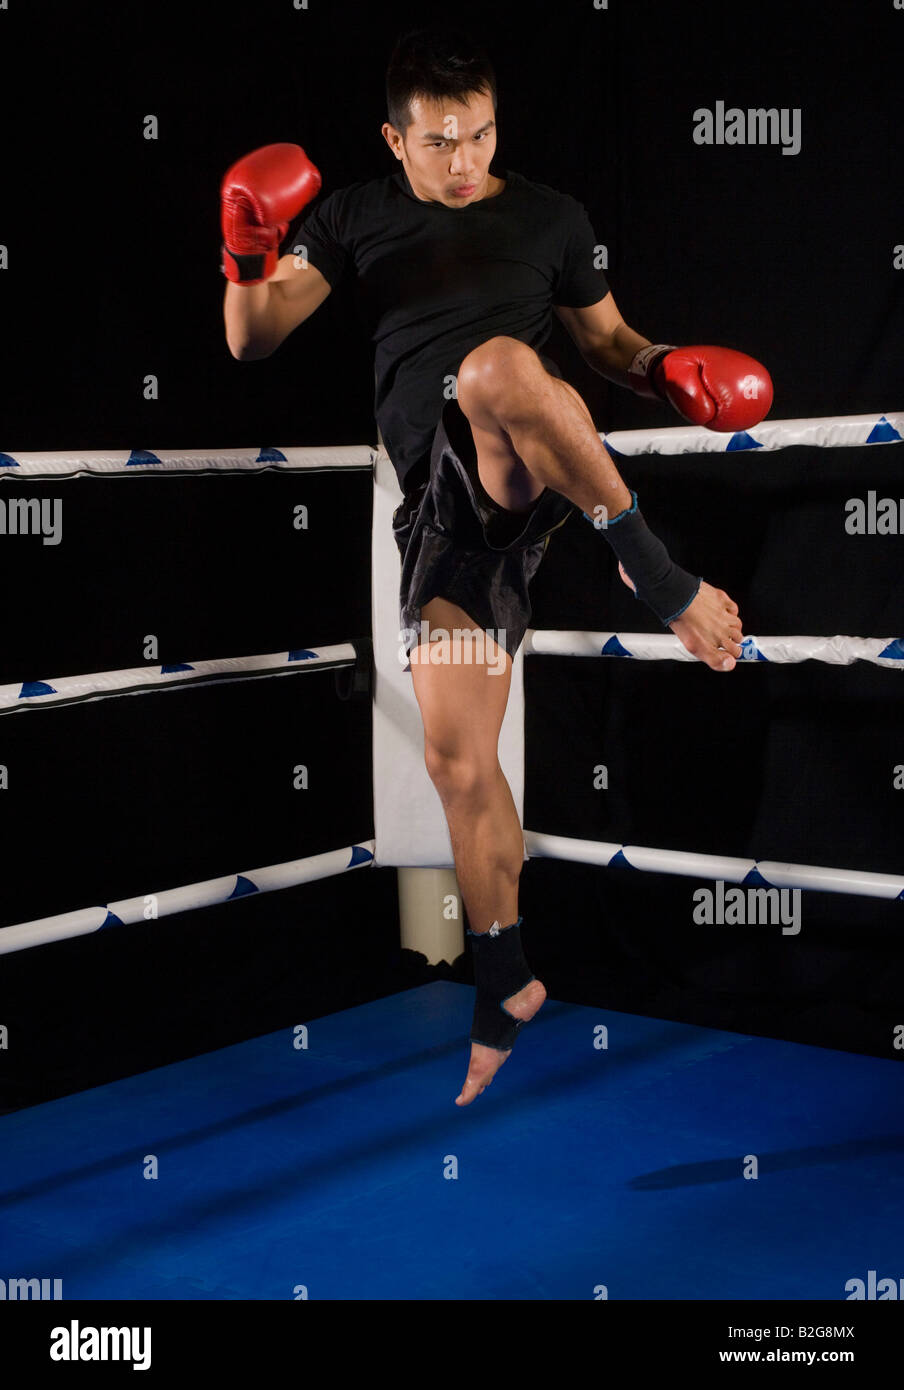 Jeune homme pratiquant la boxe dans un ring de boxe Banque D'Images